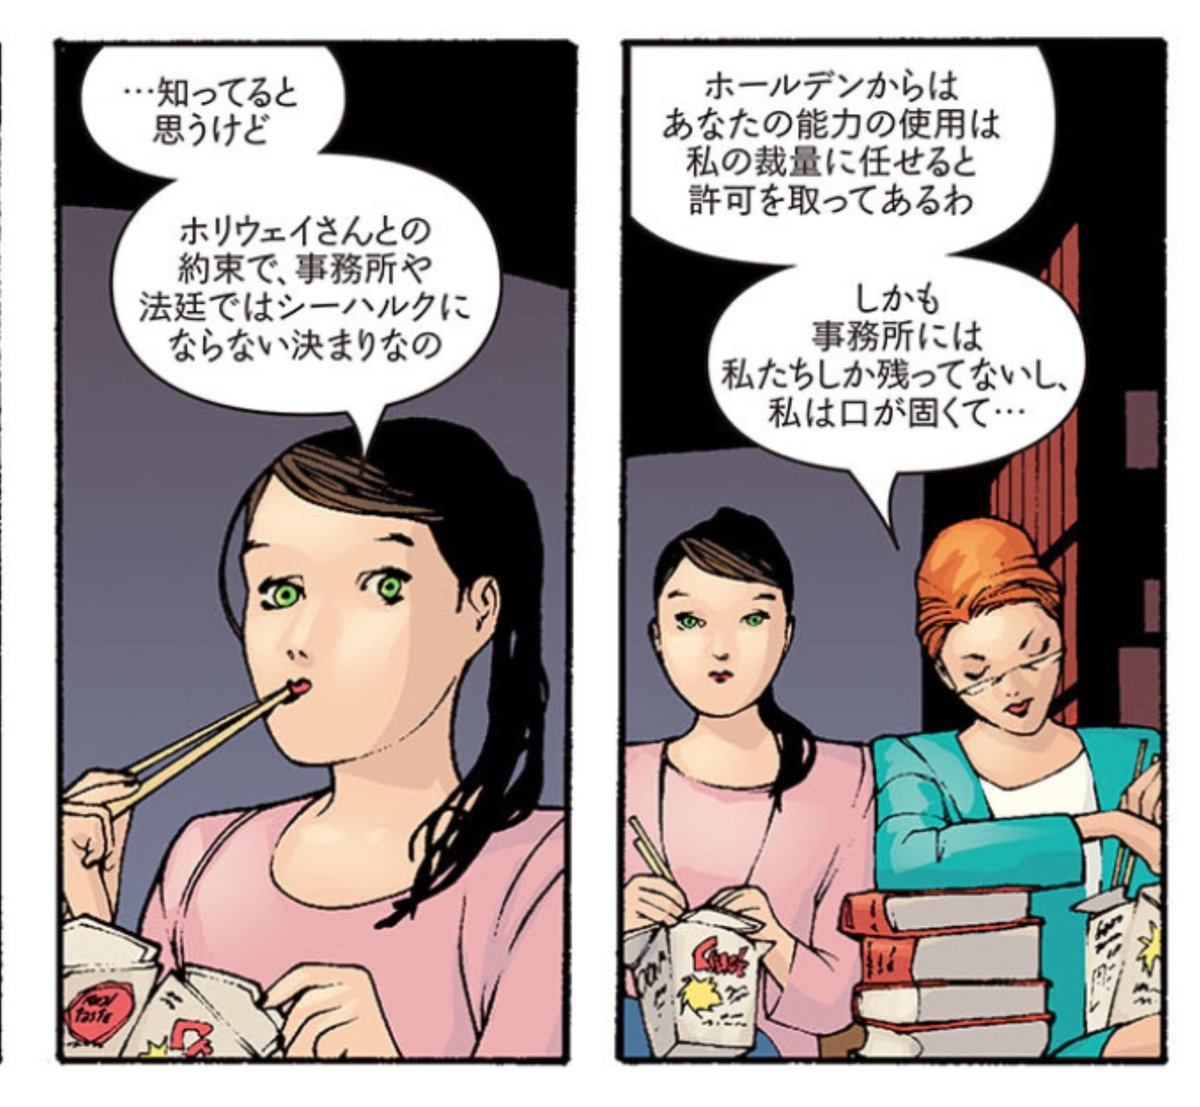 アメコミ読んでる時に箸で食事するシーン出てくるとちょっと嬉しくなっちゃう日本人。 